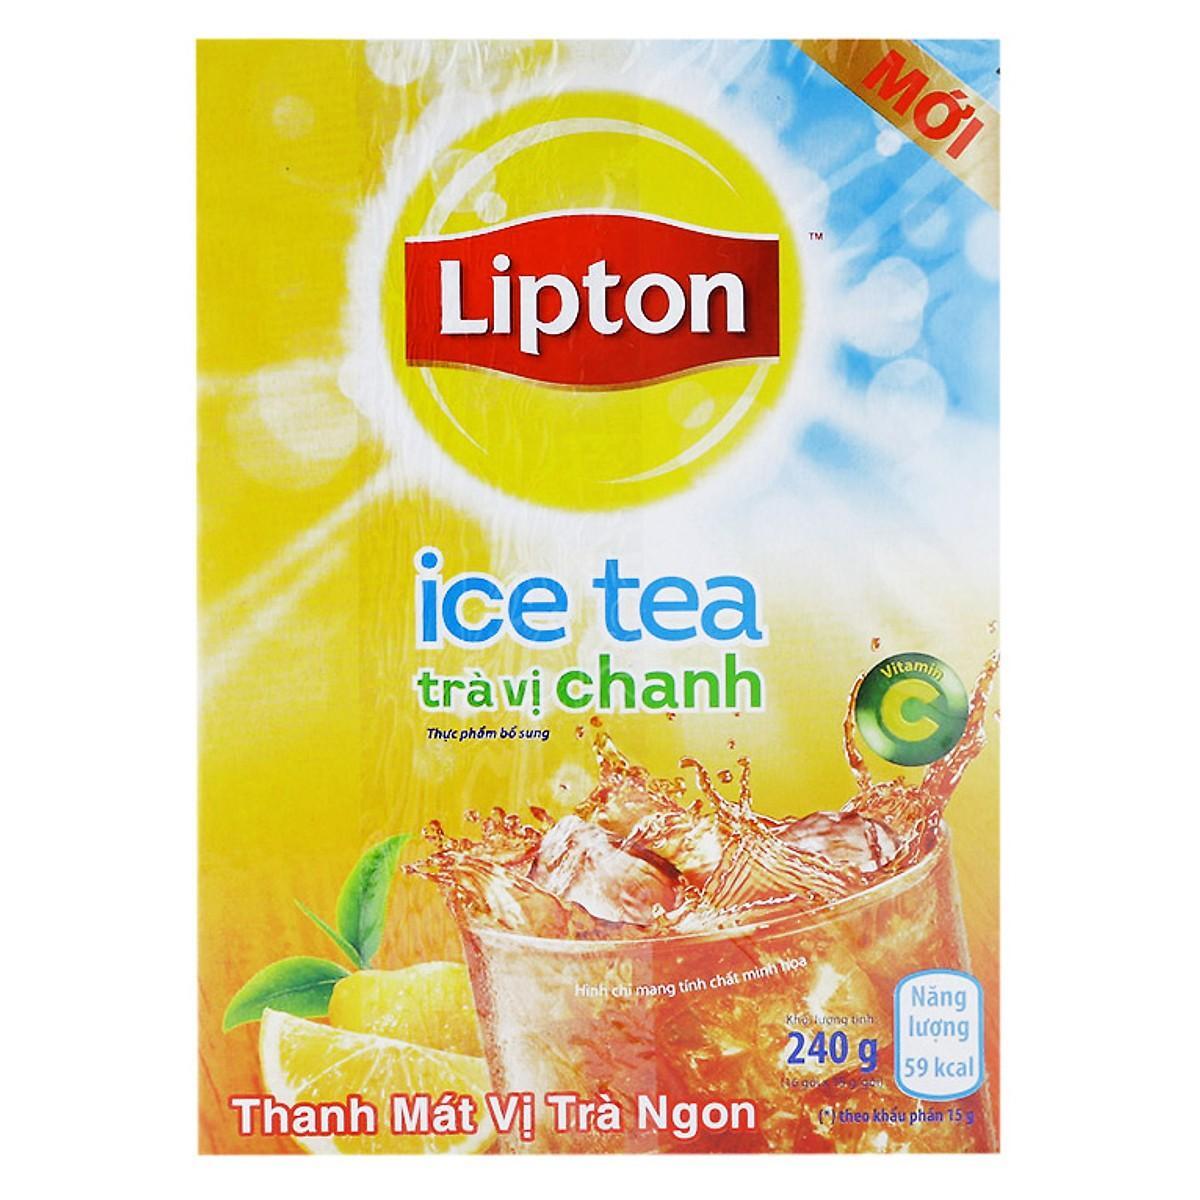 Trà Lipton ice tea hòa tan vị chanh mật ong - hộp 224g (16 gói x 14g)